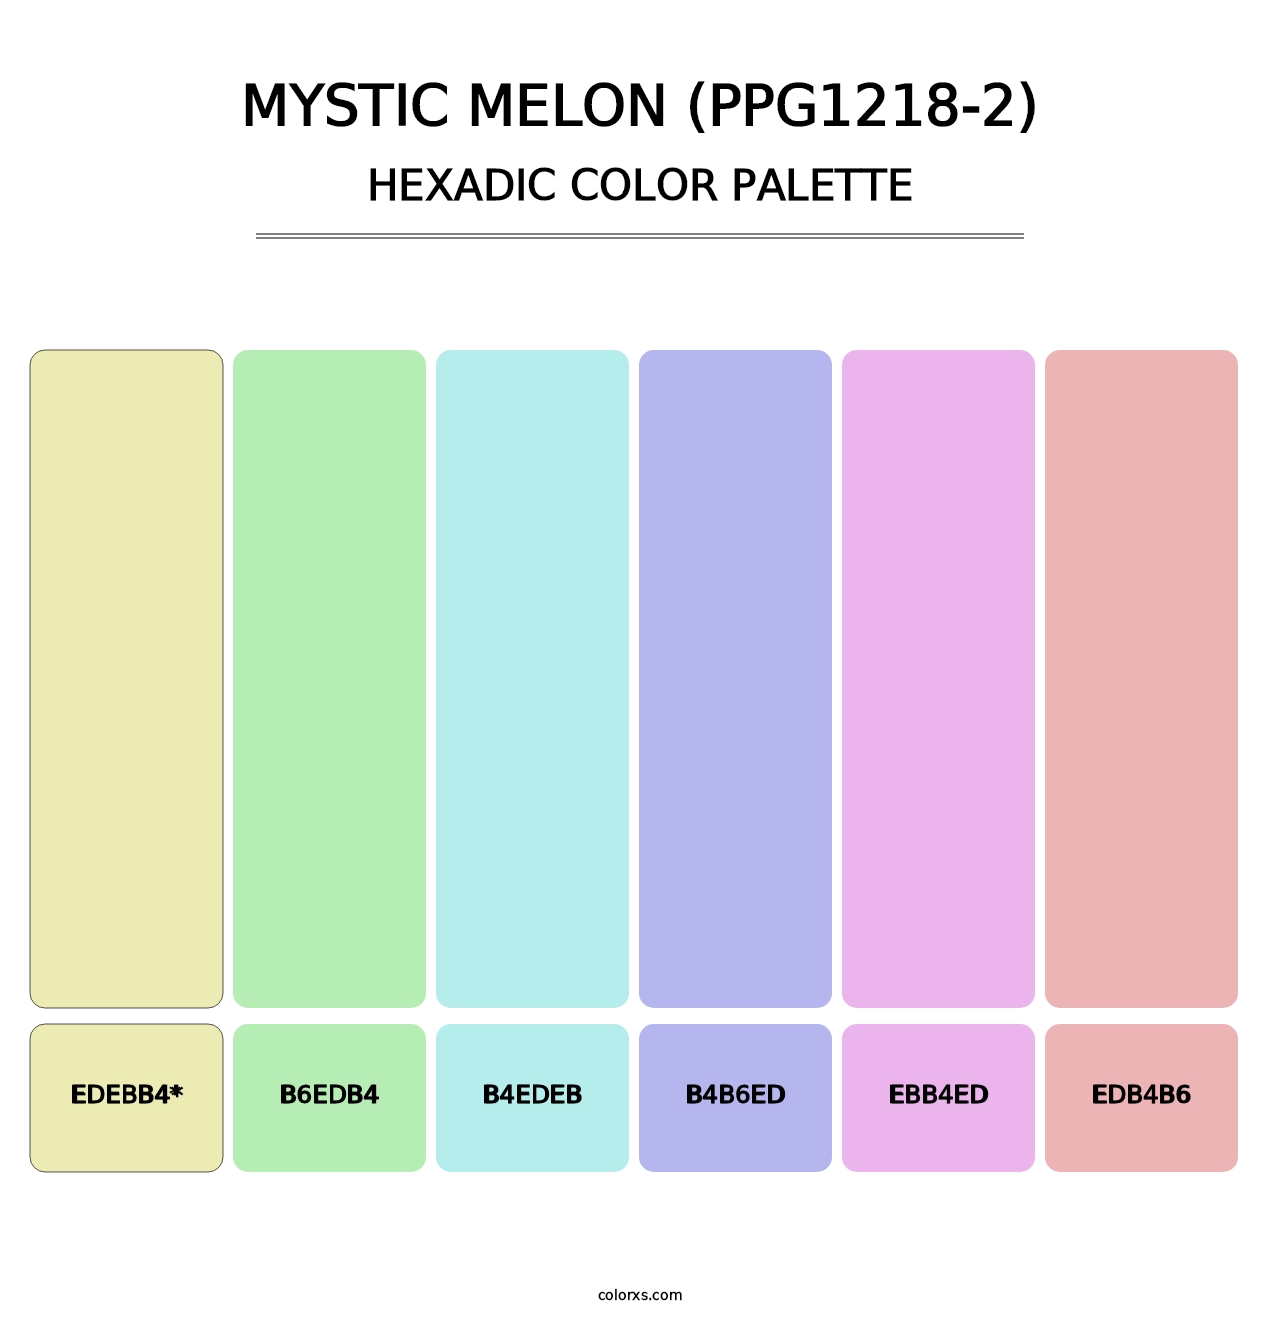 Mystic Melon (PPG1218-2) - Hexadic Color Palette